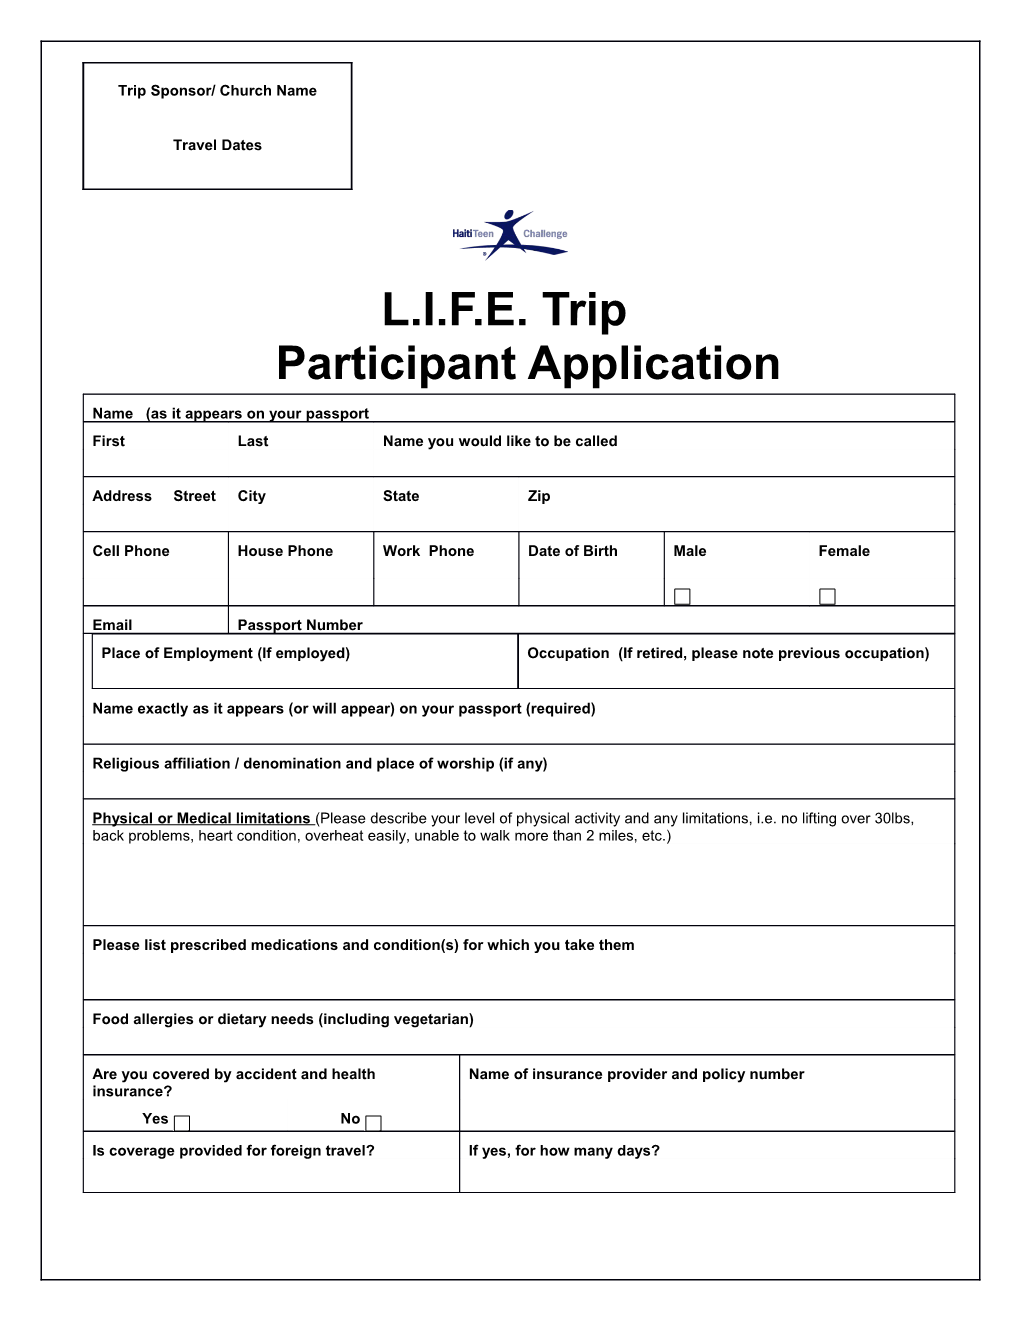 L.I.F.E. Tripparticipant Application